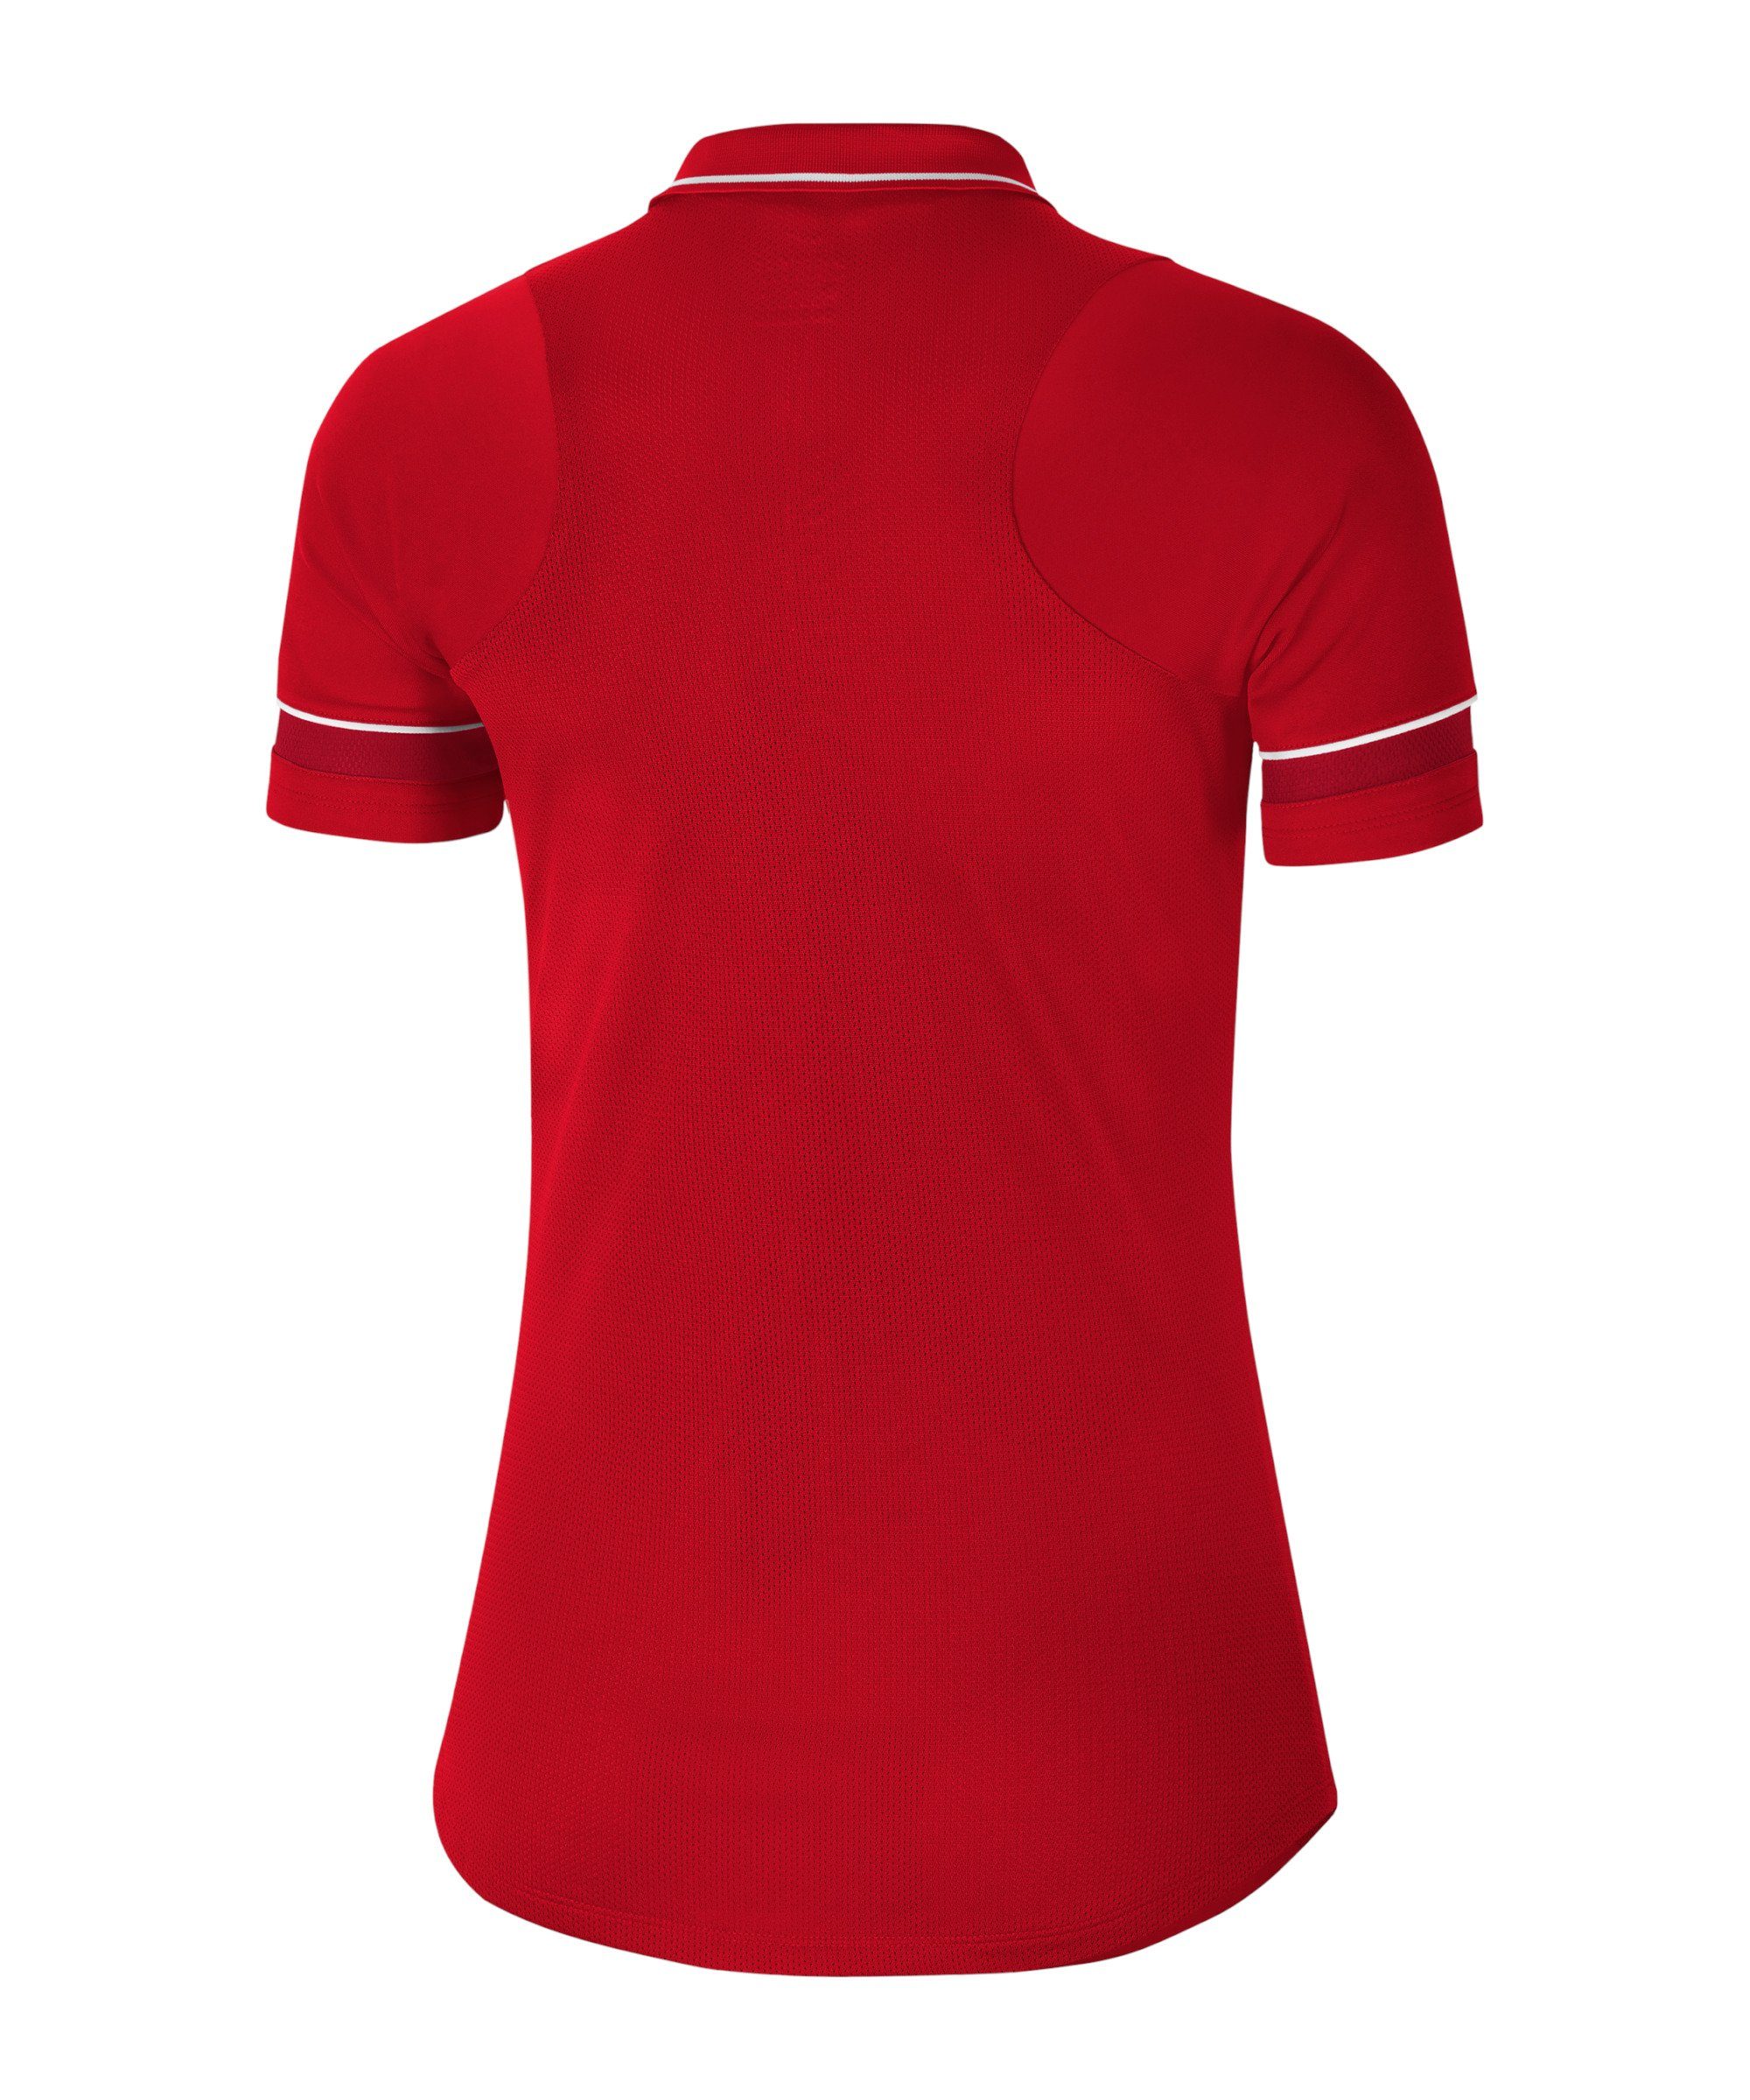 Nike Poloshirt Damen 21 default rotweiss Academy Poloshirt